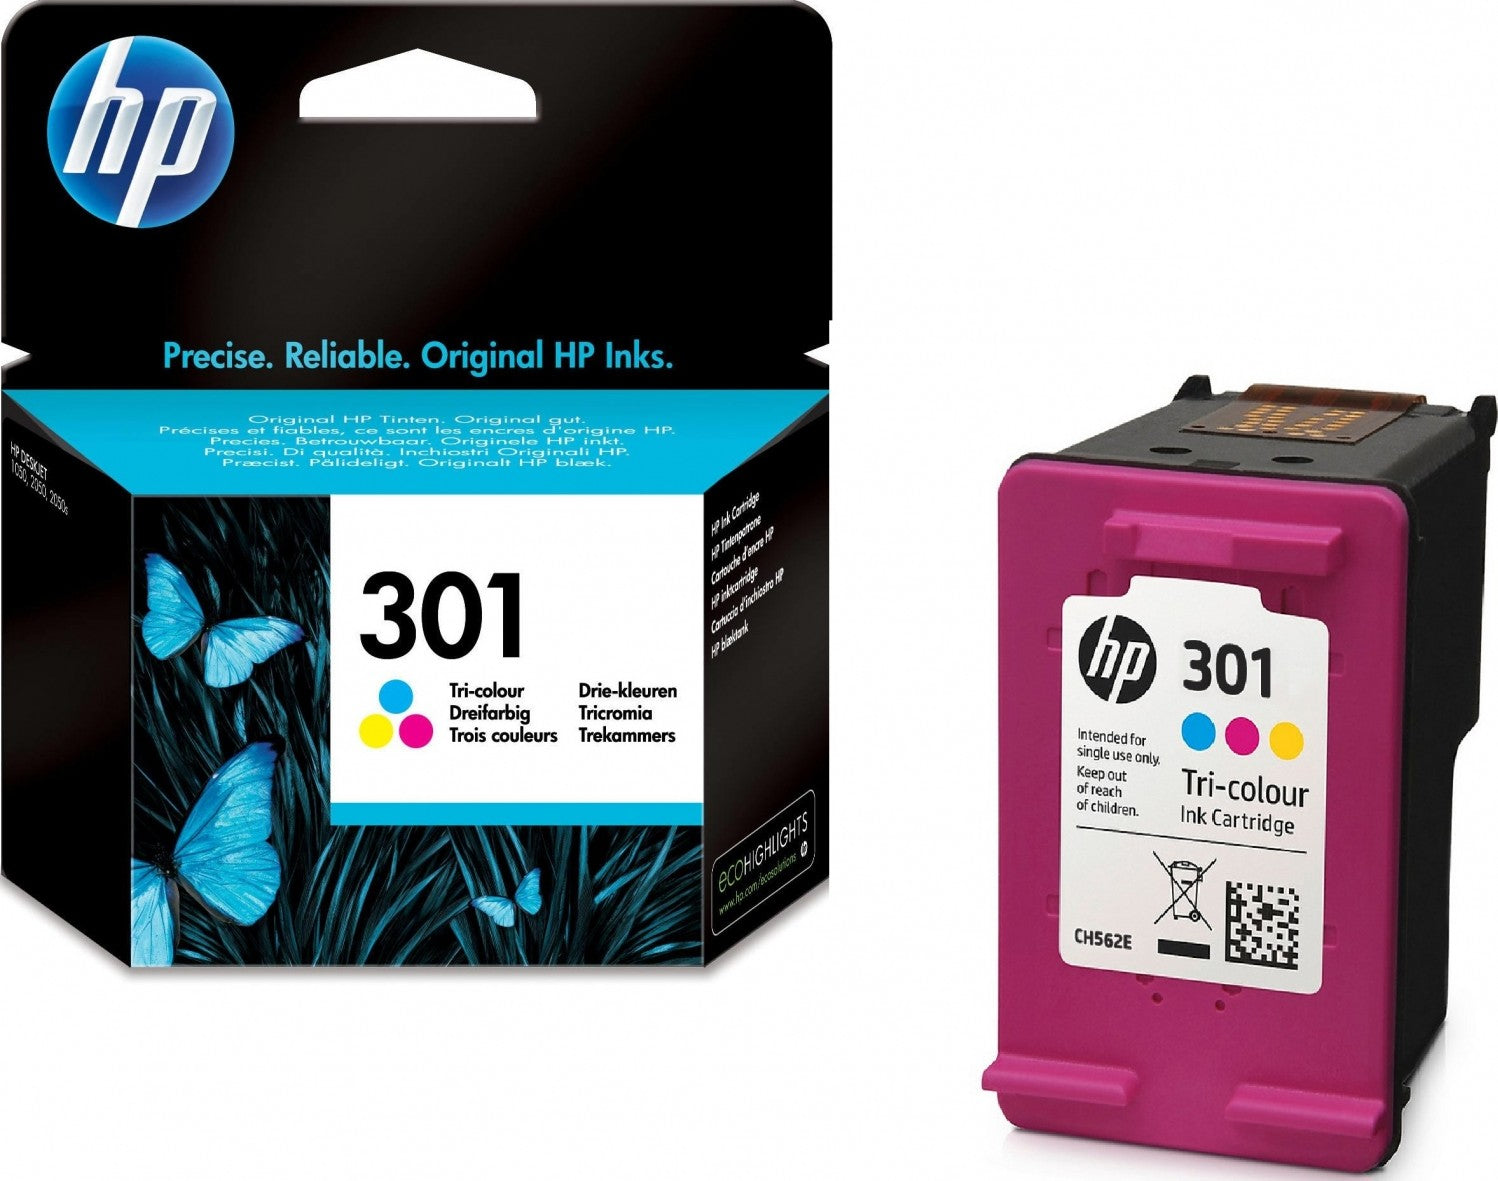 scherp oorsprong over HP 301 Black and HP 301 Color Ink Cartridges – SKYROCKUAE